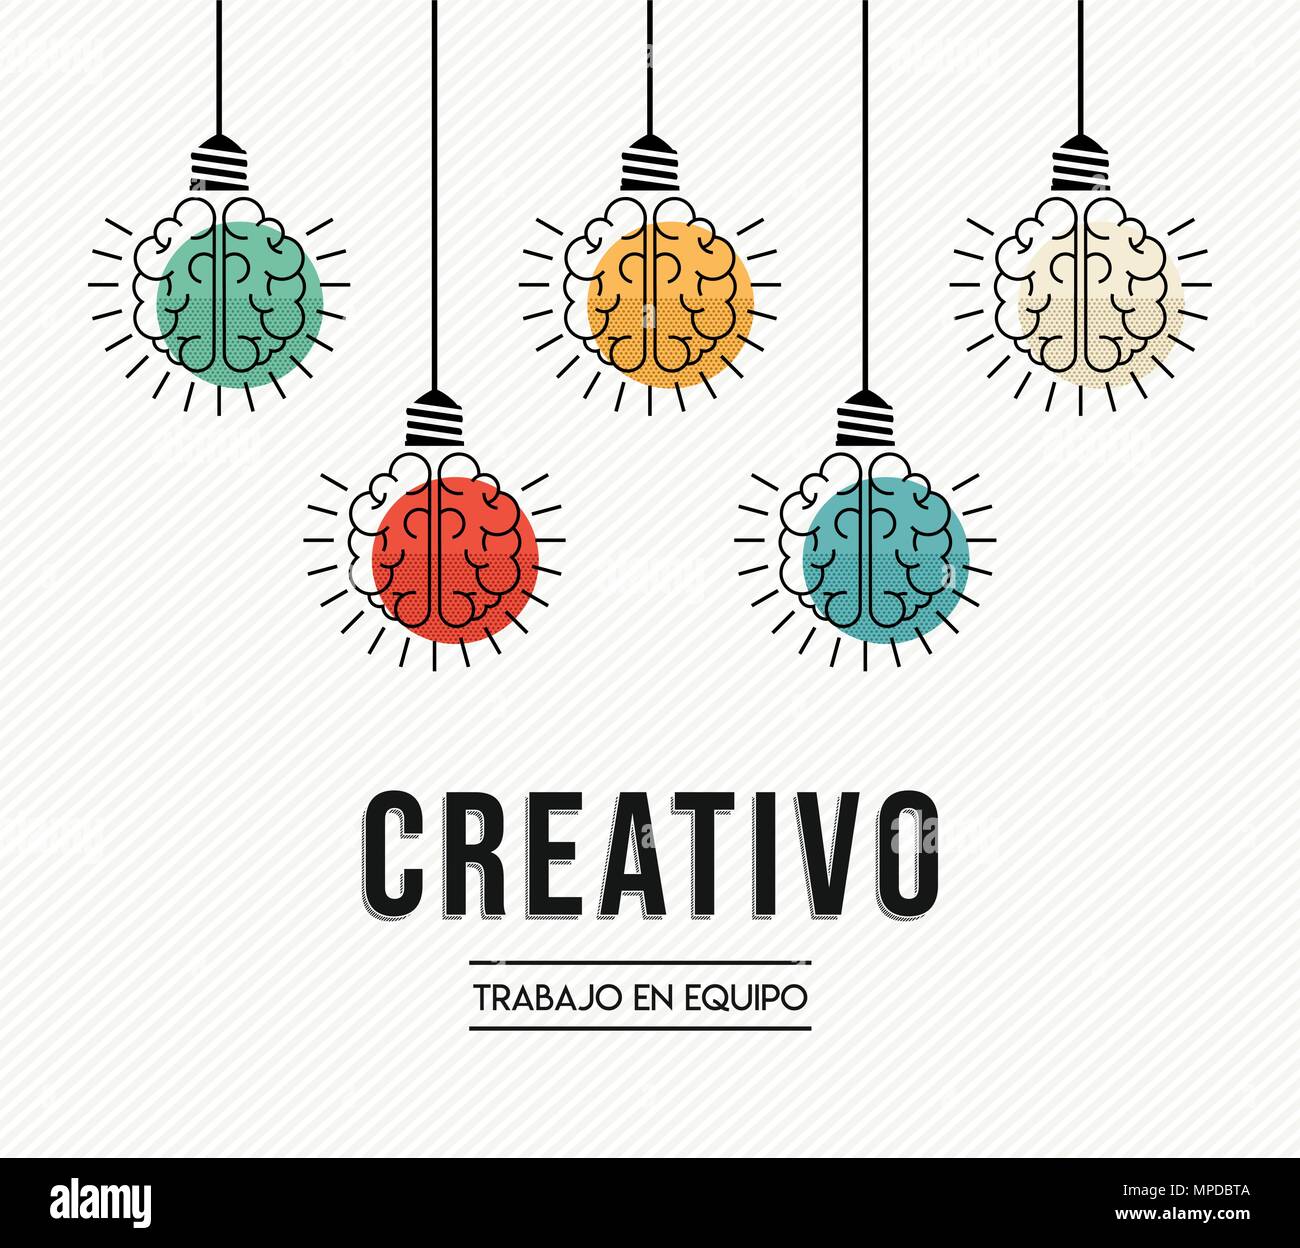 Kreative Teamarbeit modernes Design in spanischer Sprache mit menschlichen Gehirnen als bunte Lampe Licht, business Kreativität Konzept. EPS 10 Vektor. Stock Vektor